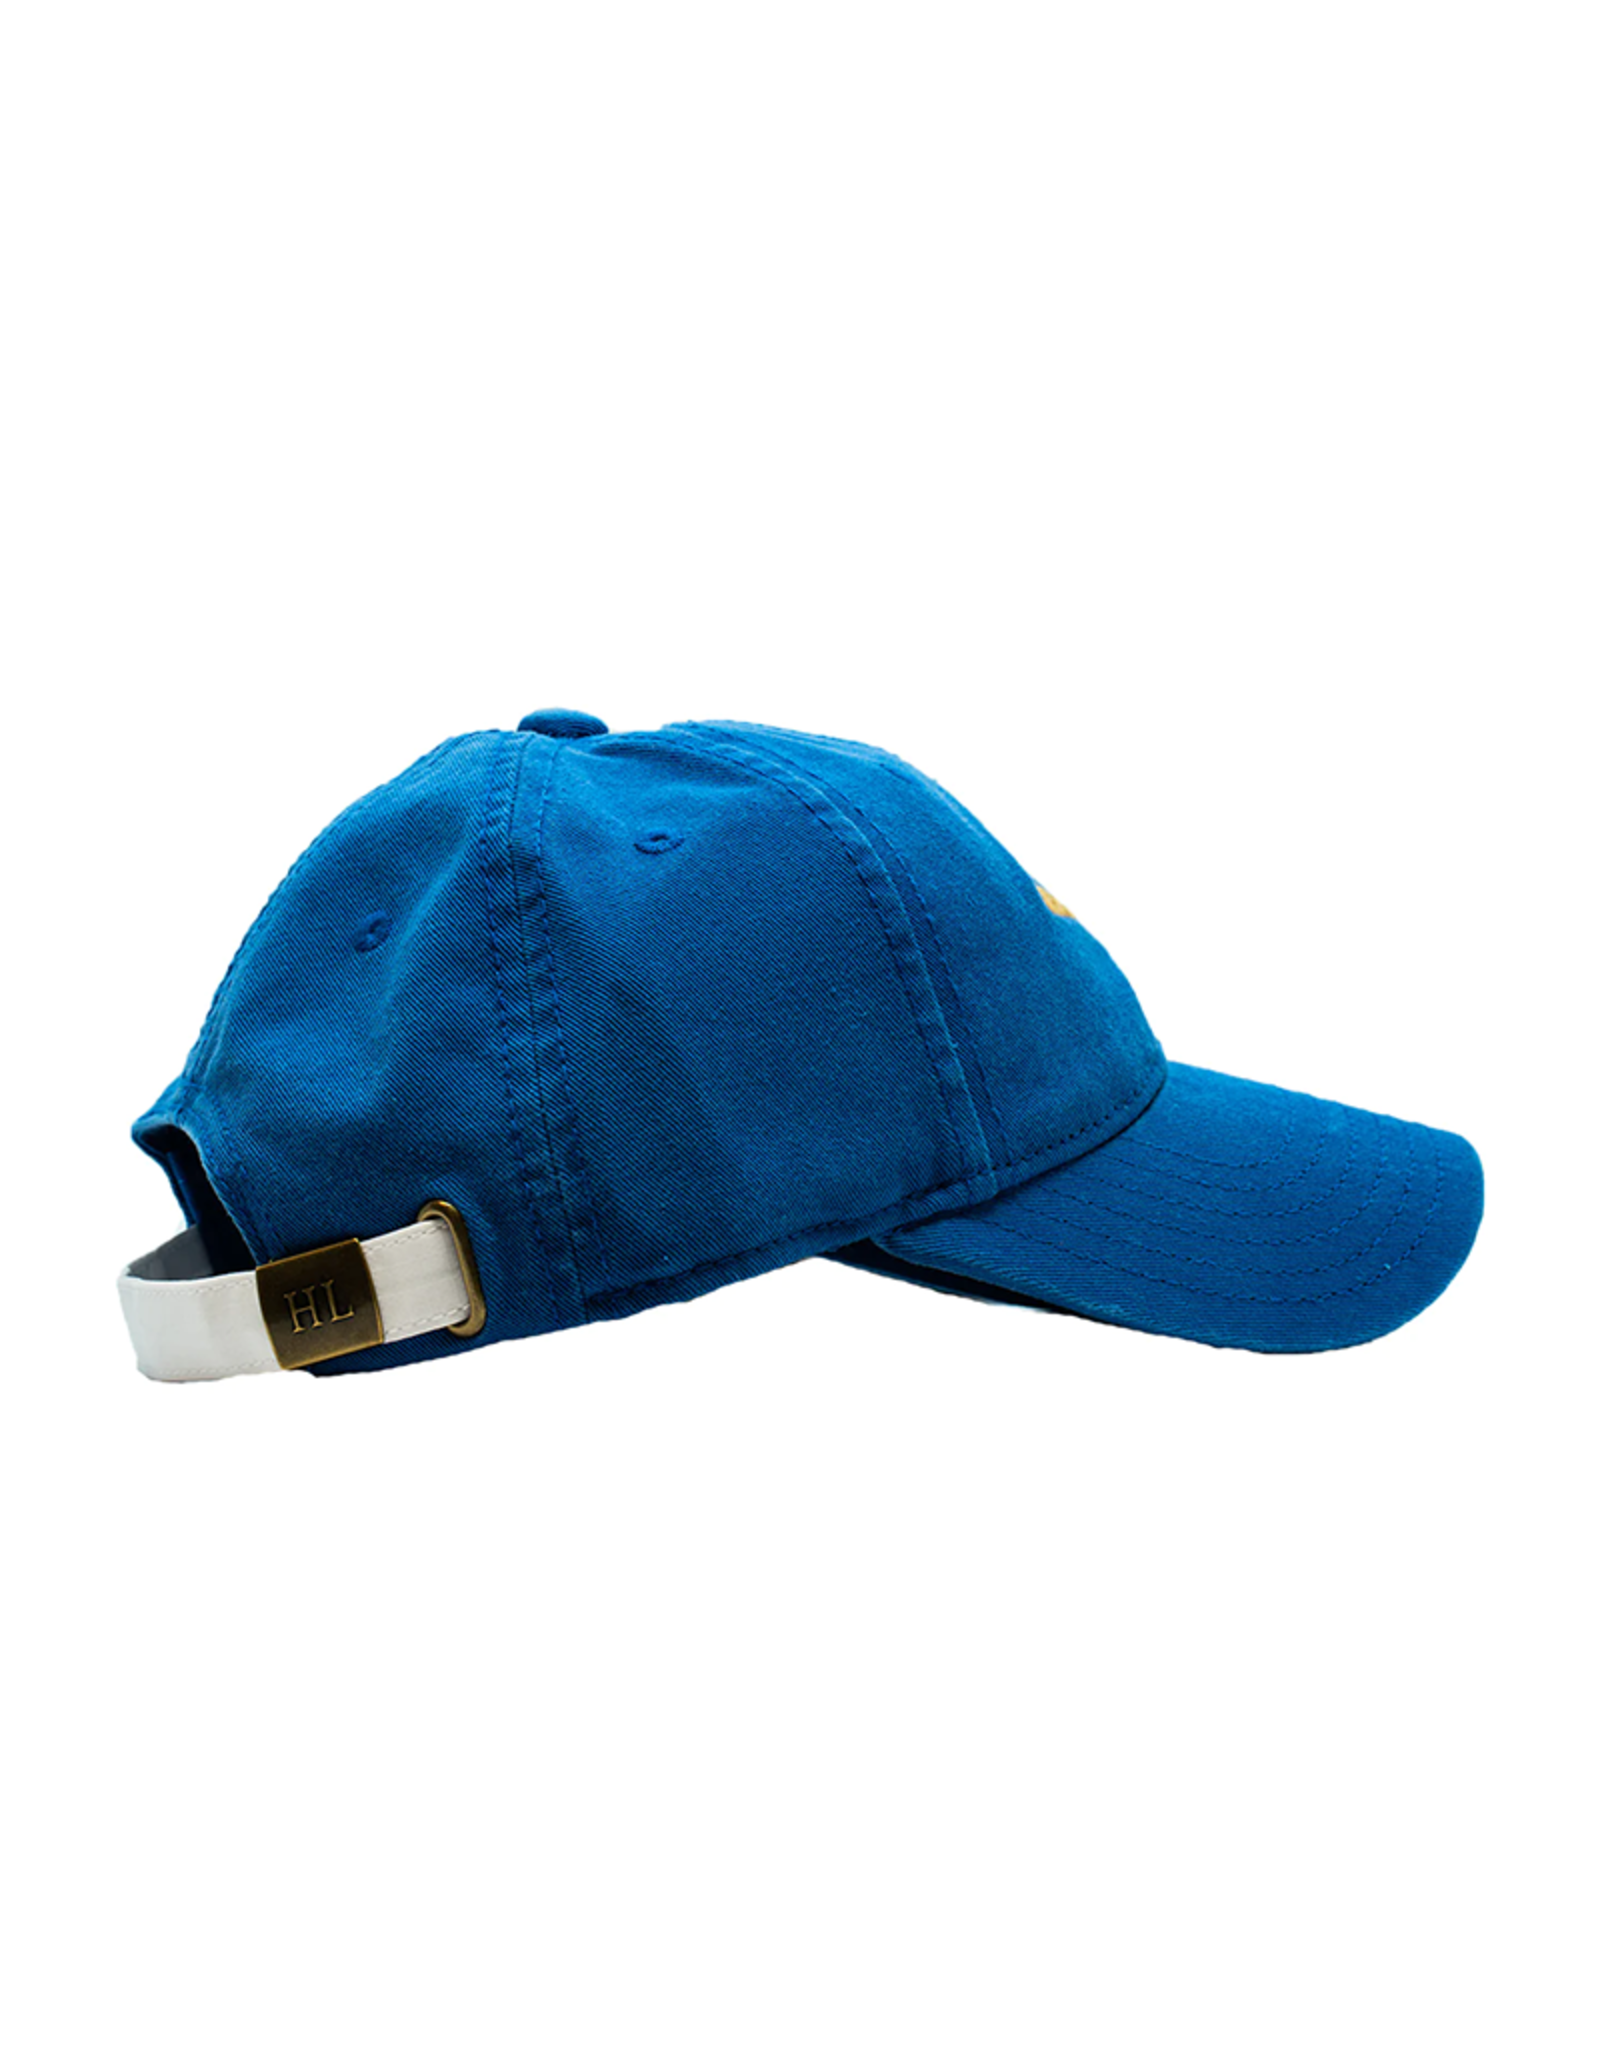 Harding Lane HL Embroidered Hat Cobalt Blue Baseball